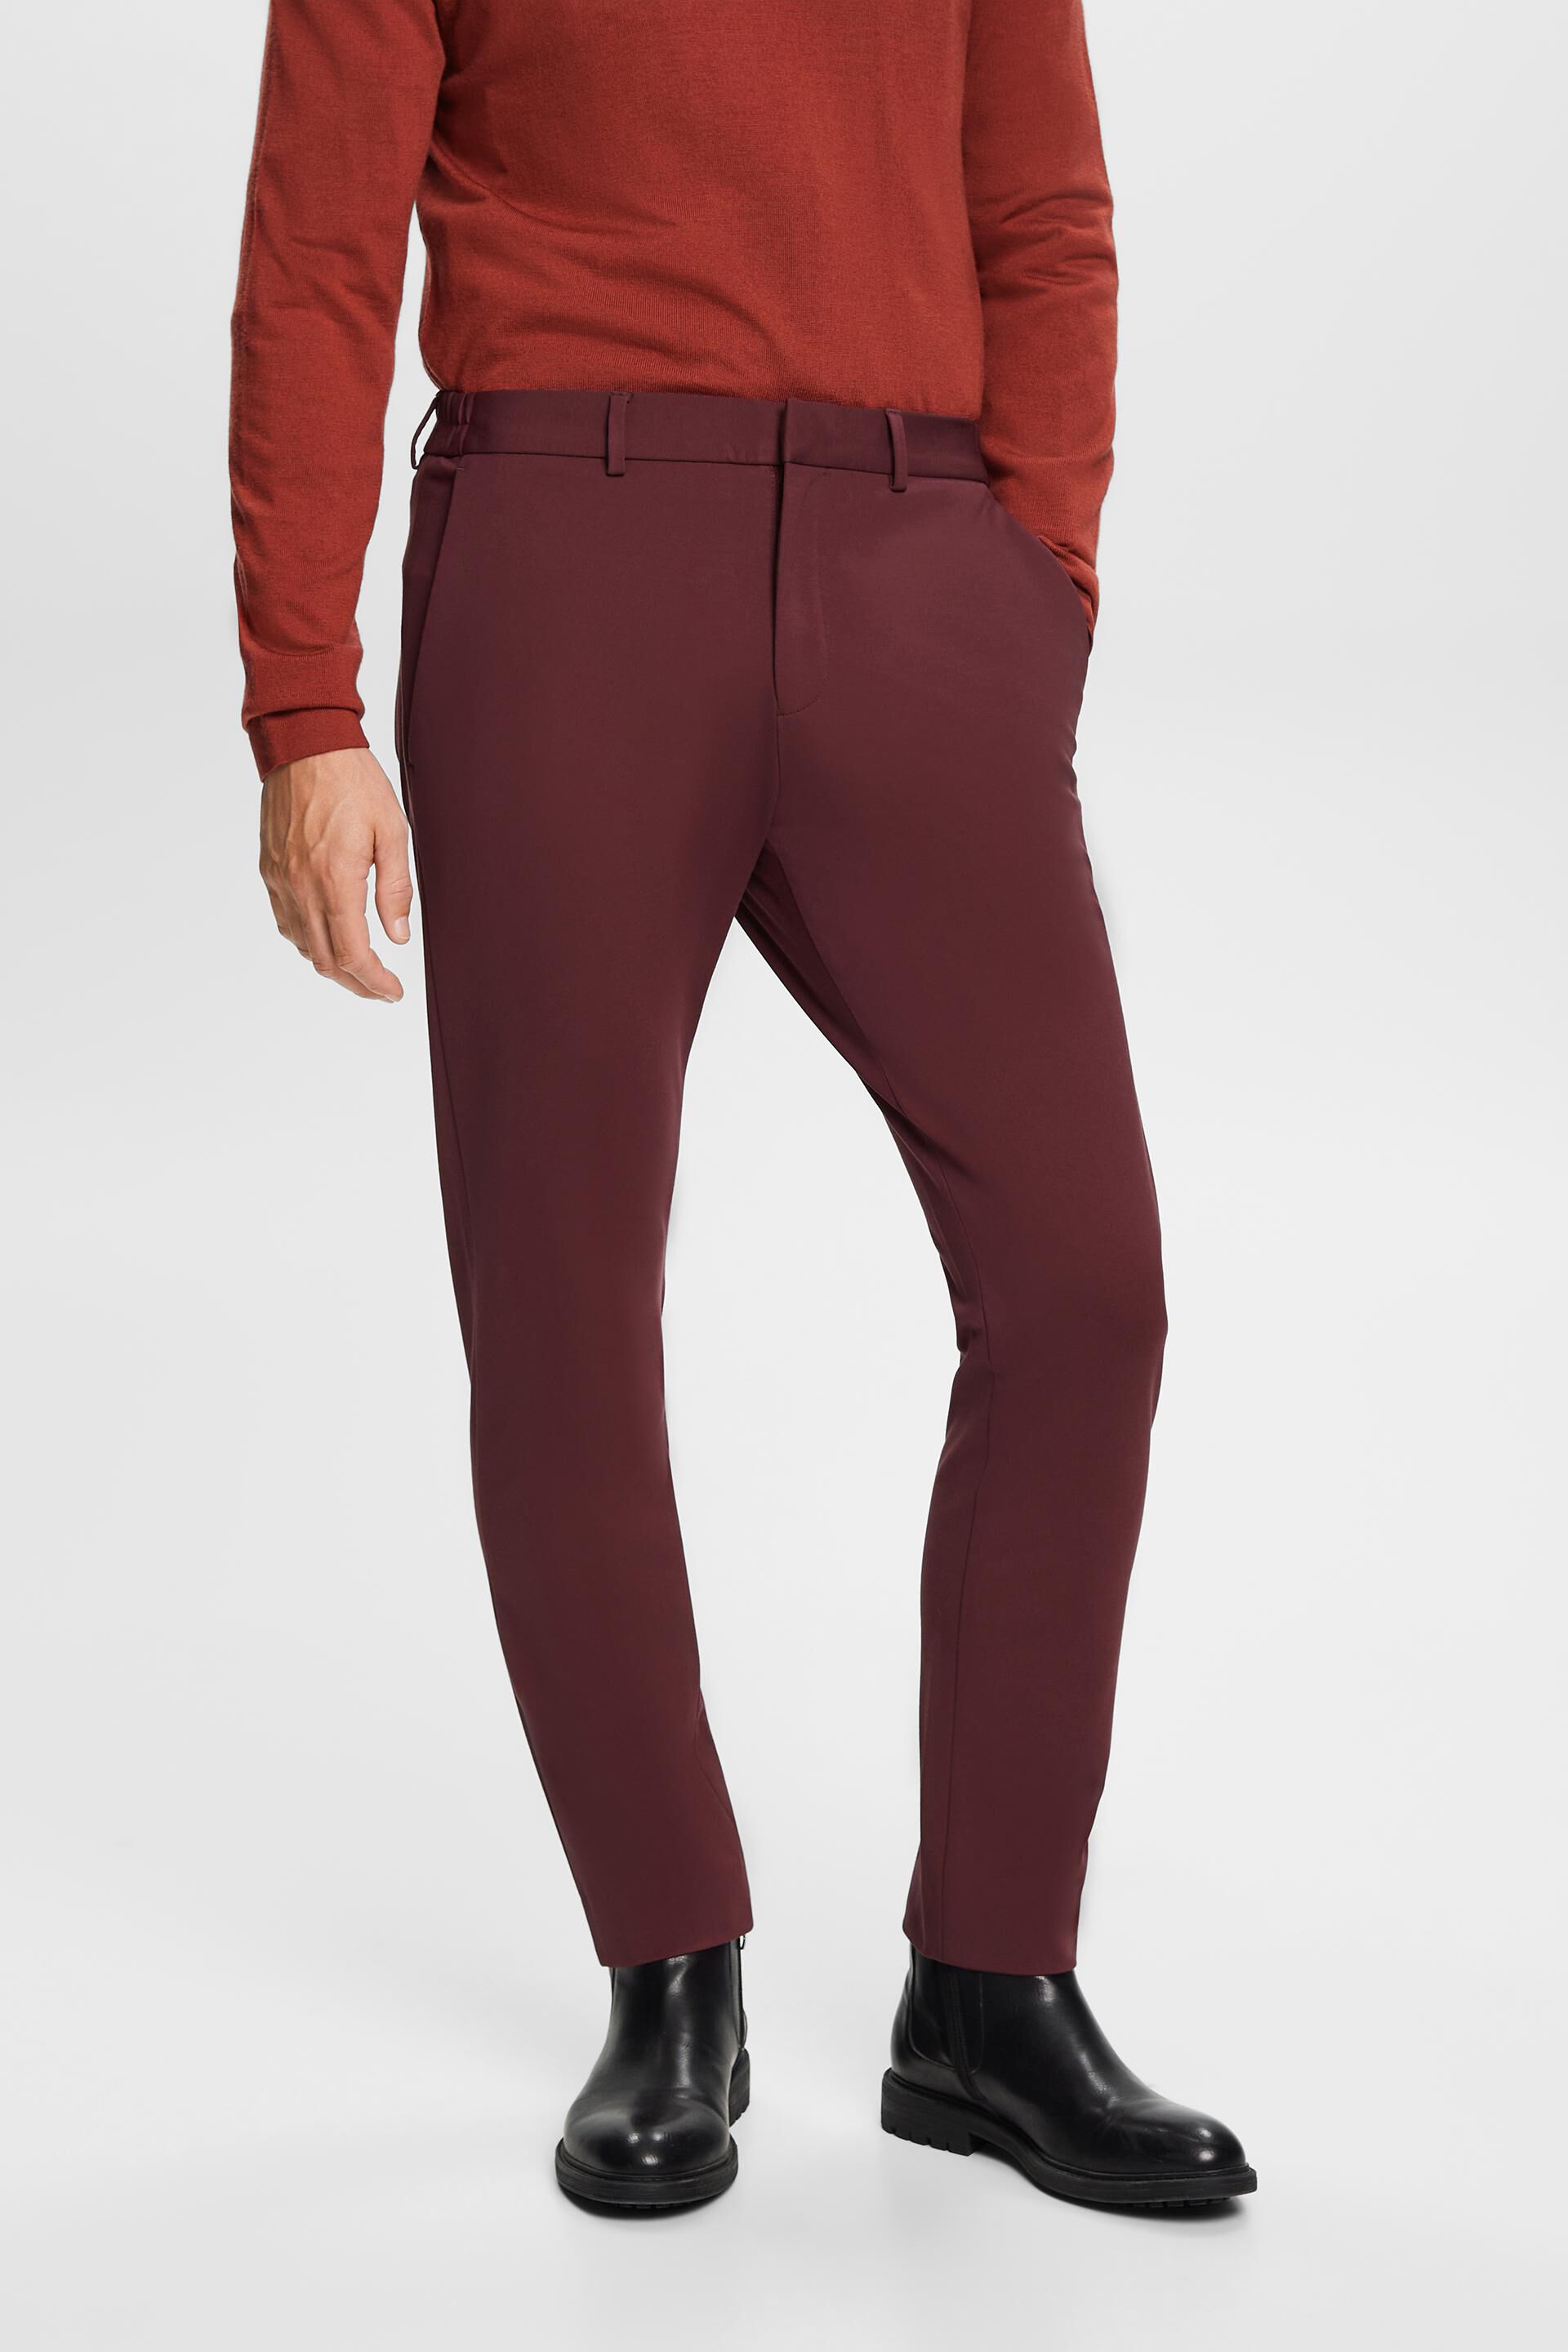 ASOS DESIGN slim tuxedo suit trouser in burgundy velvet | ASOS